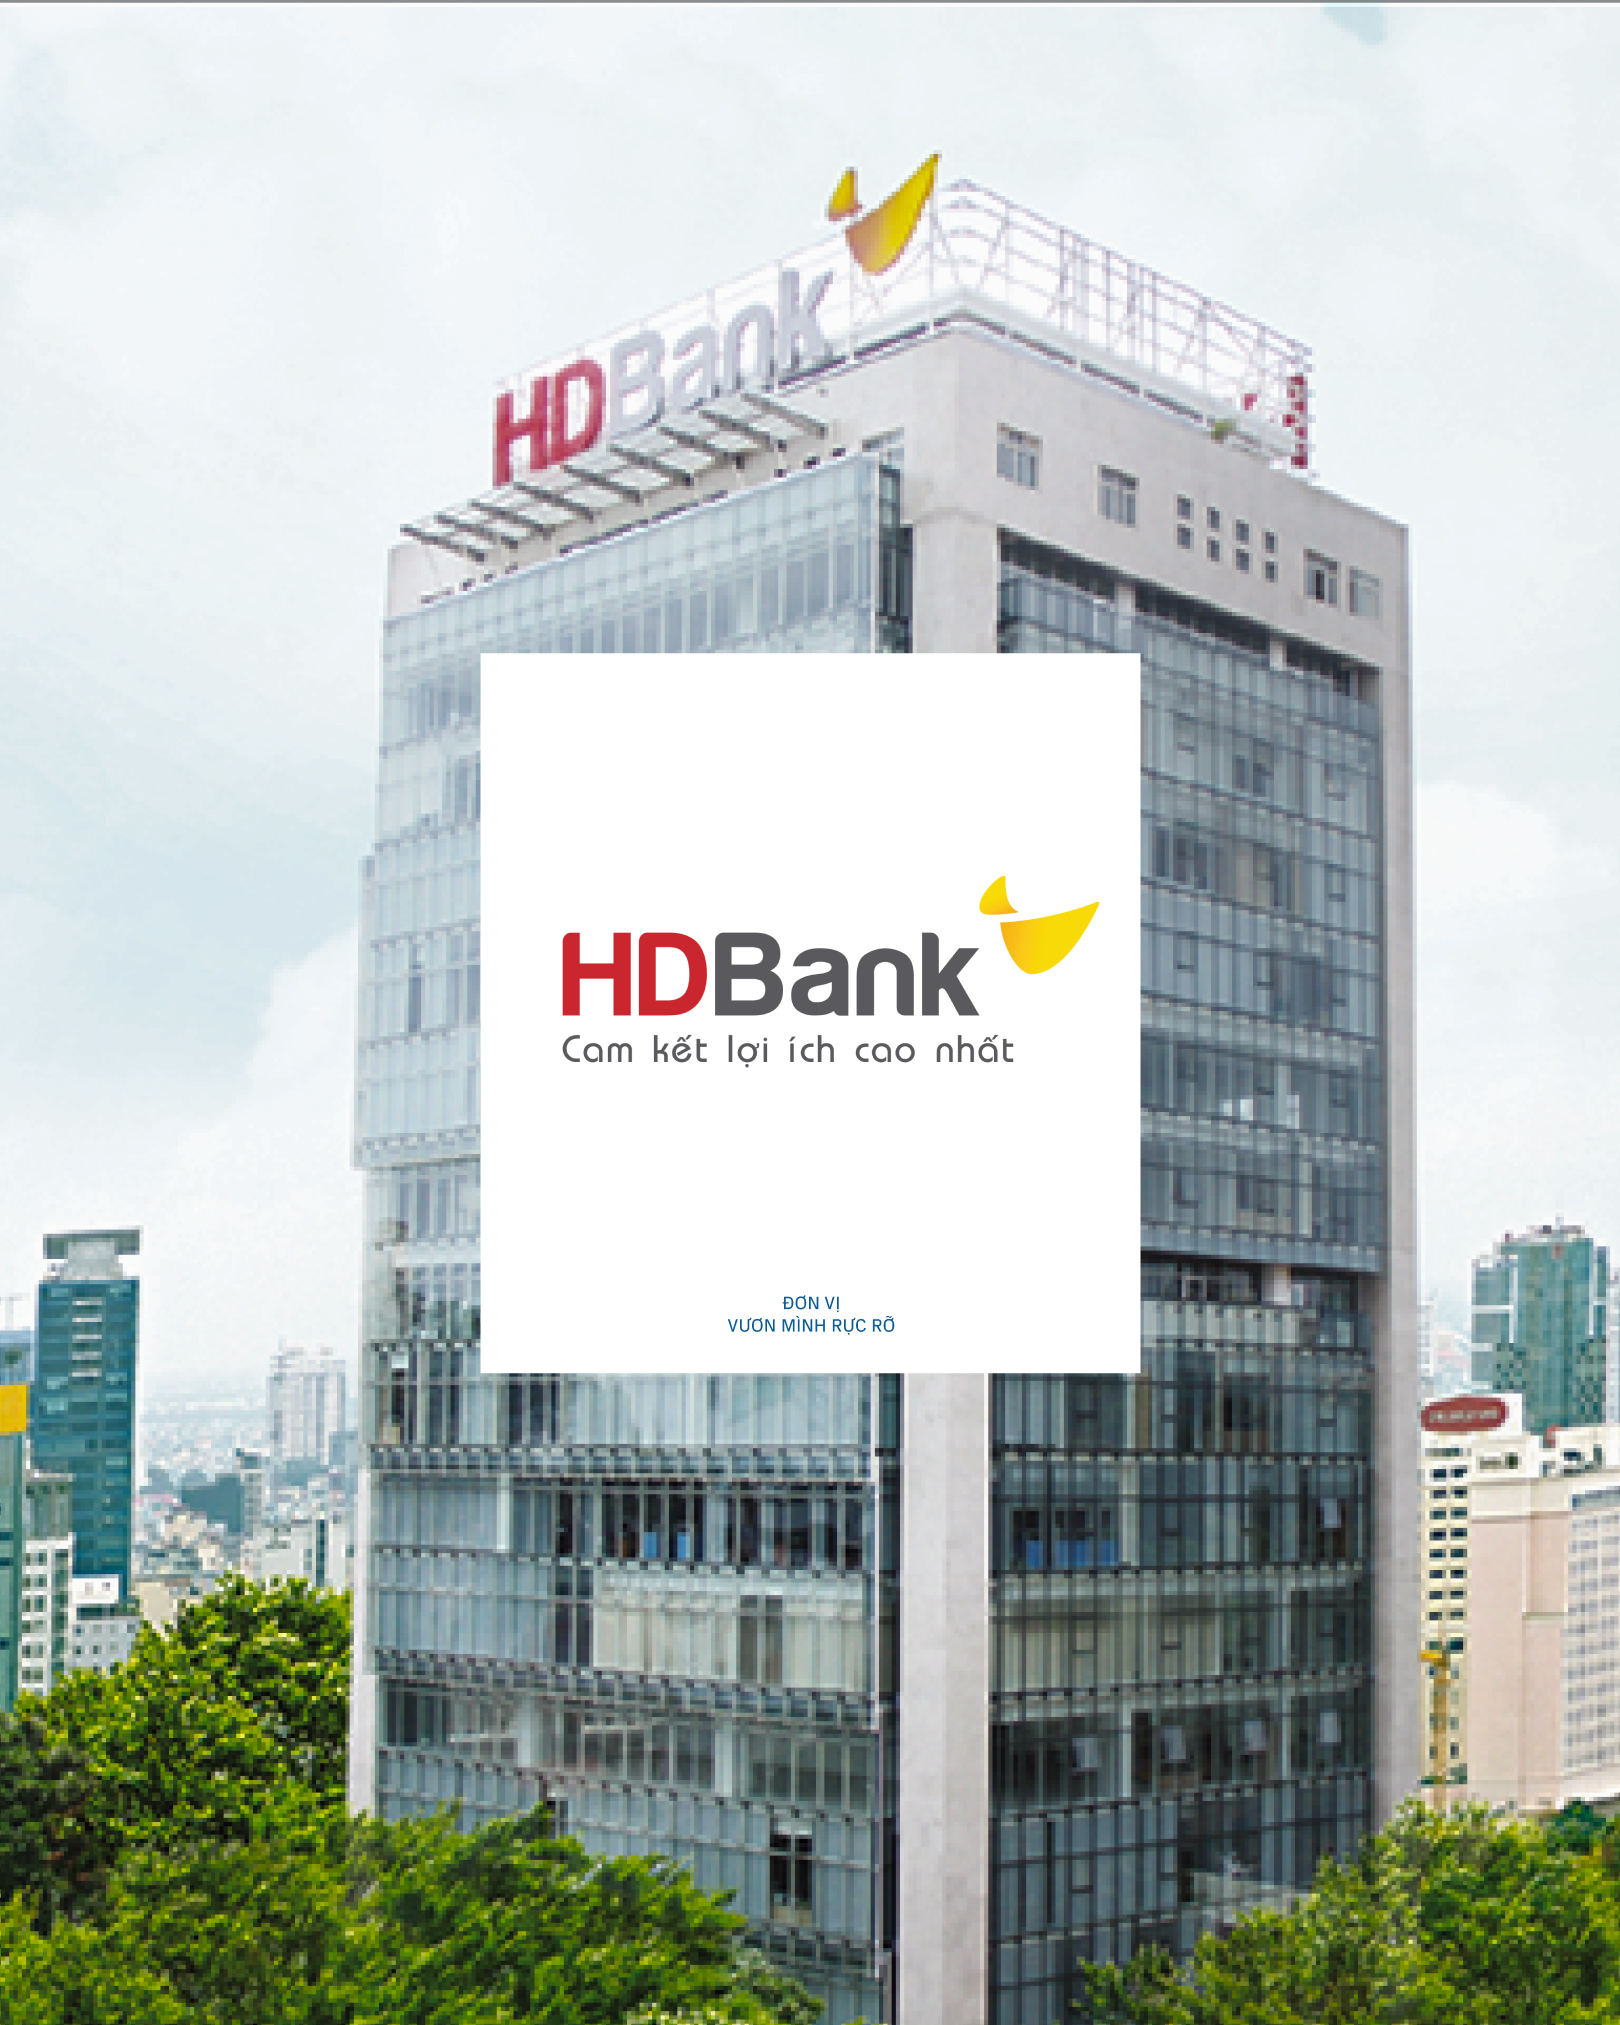 HDBank: Kinh doanh hiệu quả top đầu, là “nơi làm việc tốt nhất” 6 năm liên tiếp